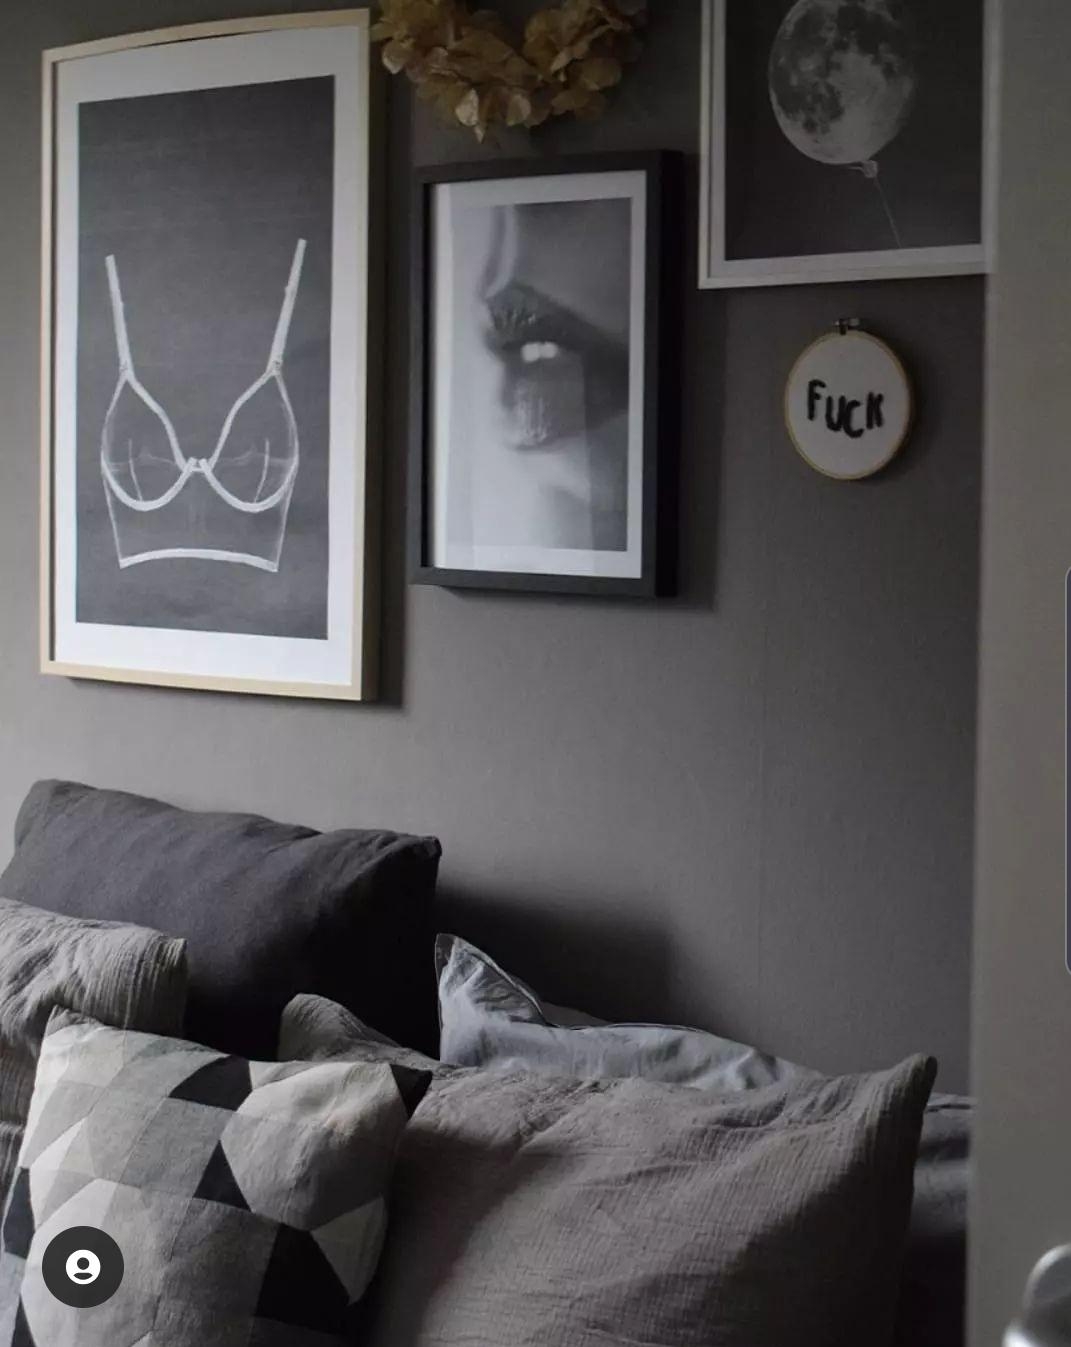 Ausschlafen ist was schönes 🖤
#bedroom #schlafzimmer #greyliving